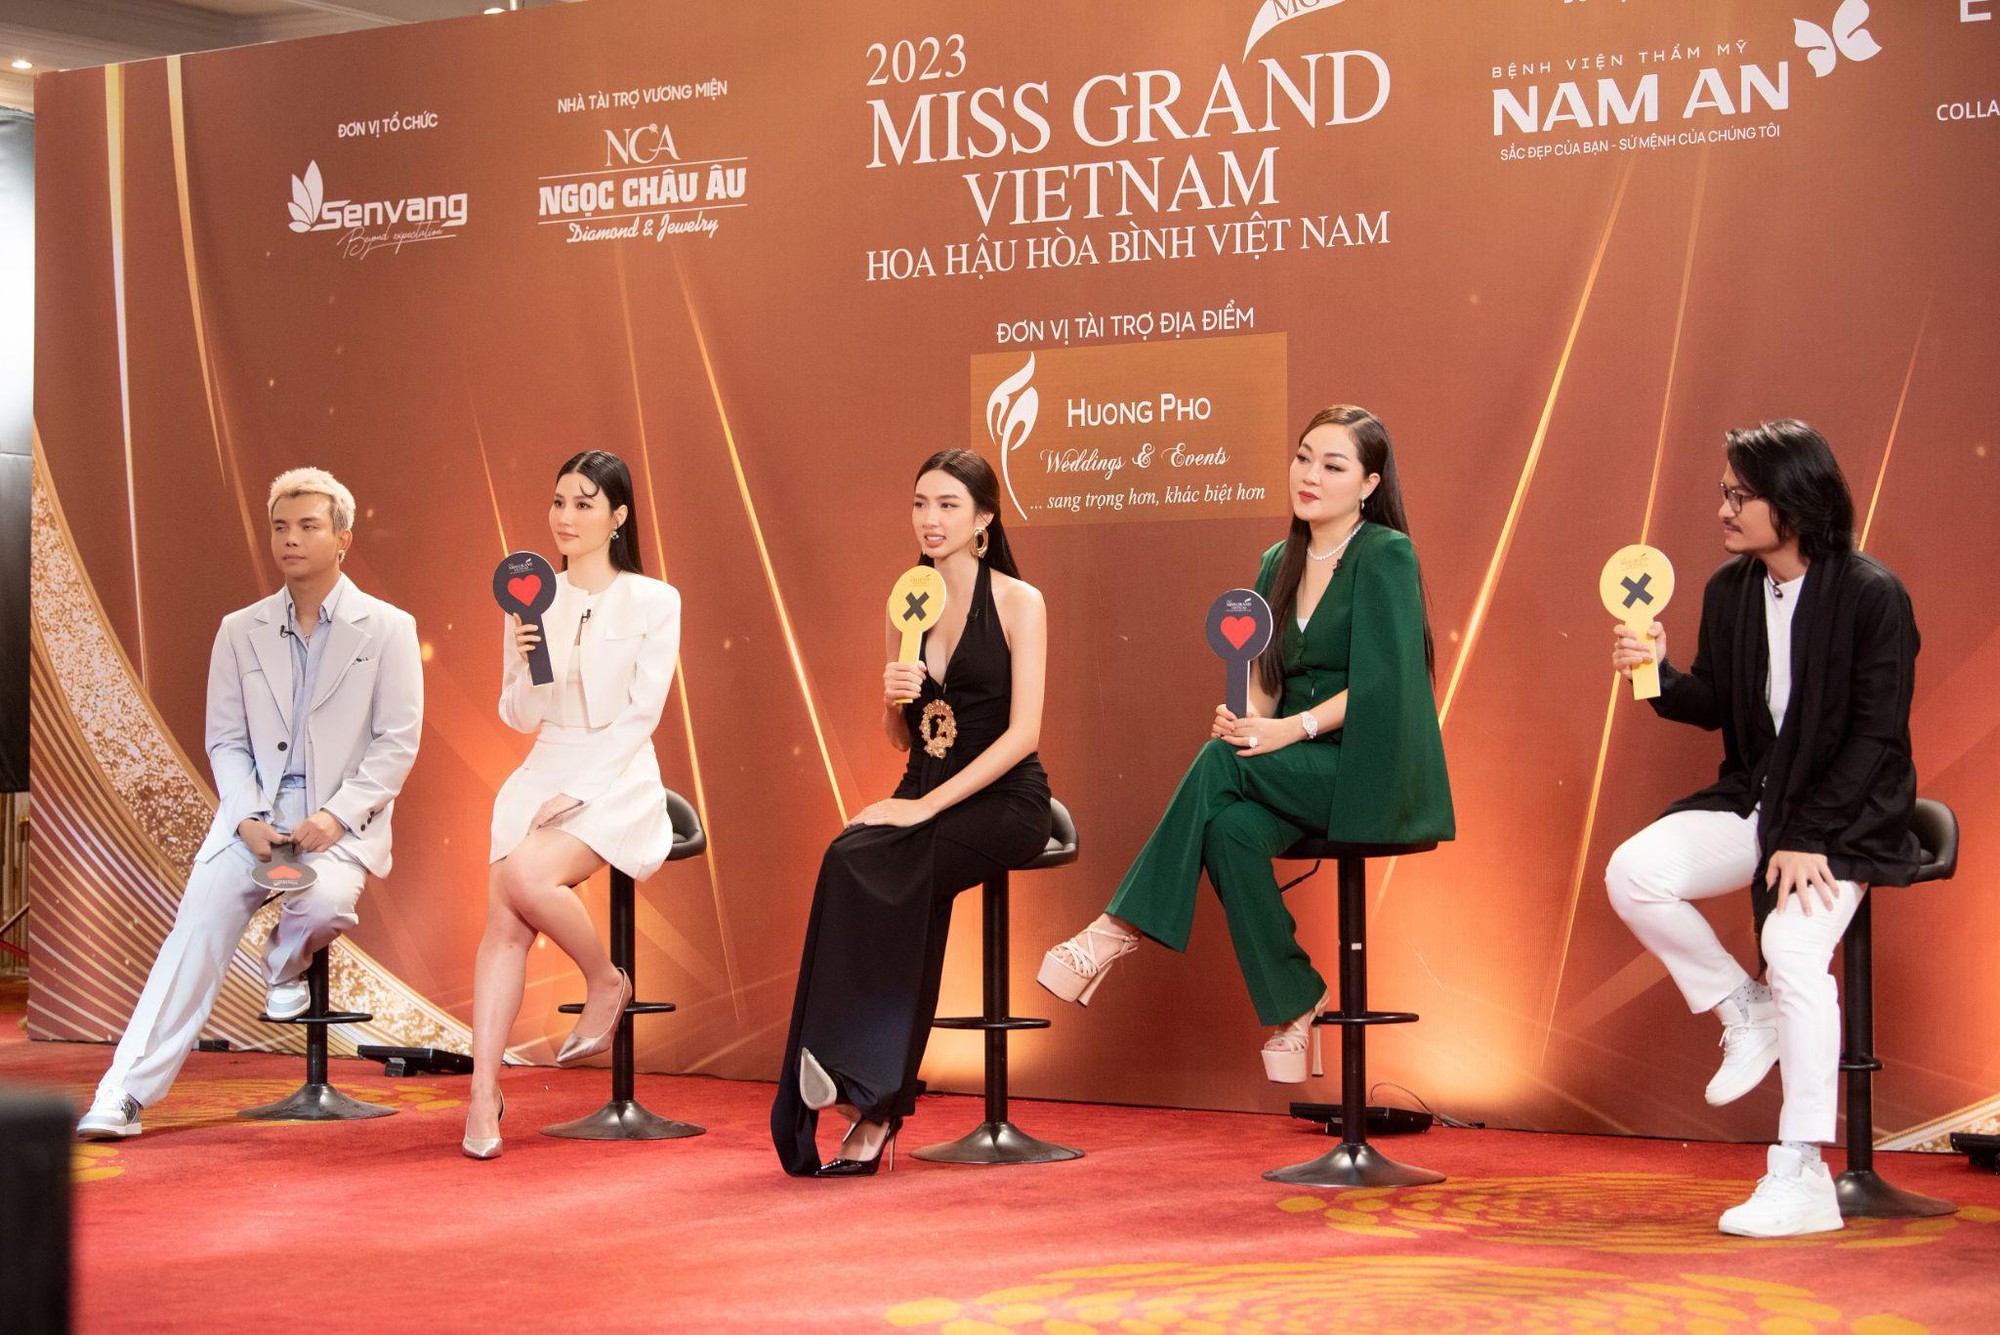 Hoa hậu Hoàng Thanh Nga cùng Ngọc Châu Âu tìm kiếm vương miện Miss Grand Vietnam 2023 - Ảnh 2.